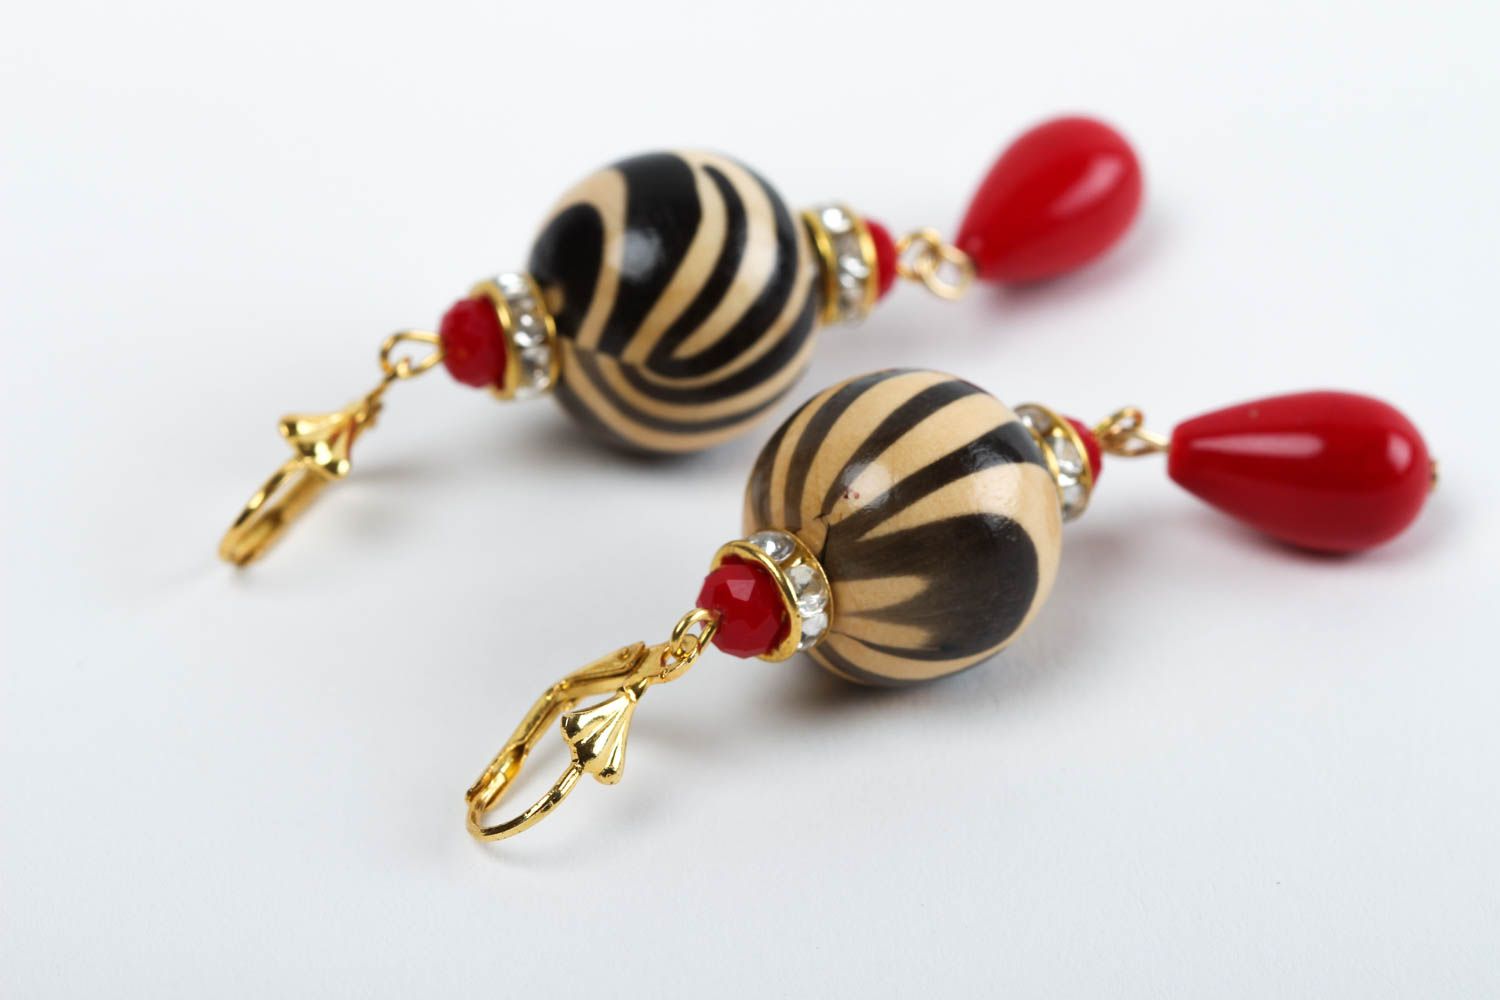 Handmade earrings designer earrings for girls earrings with charms gift for her photo 4